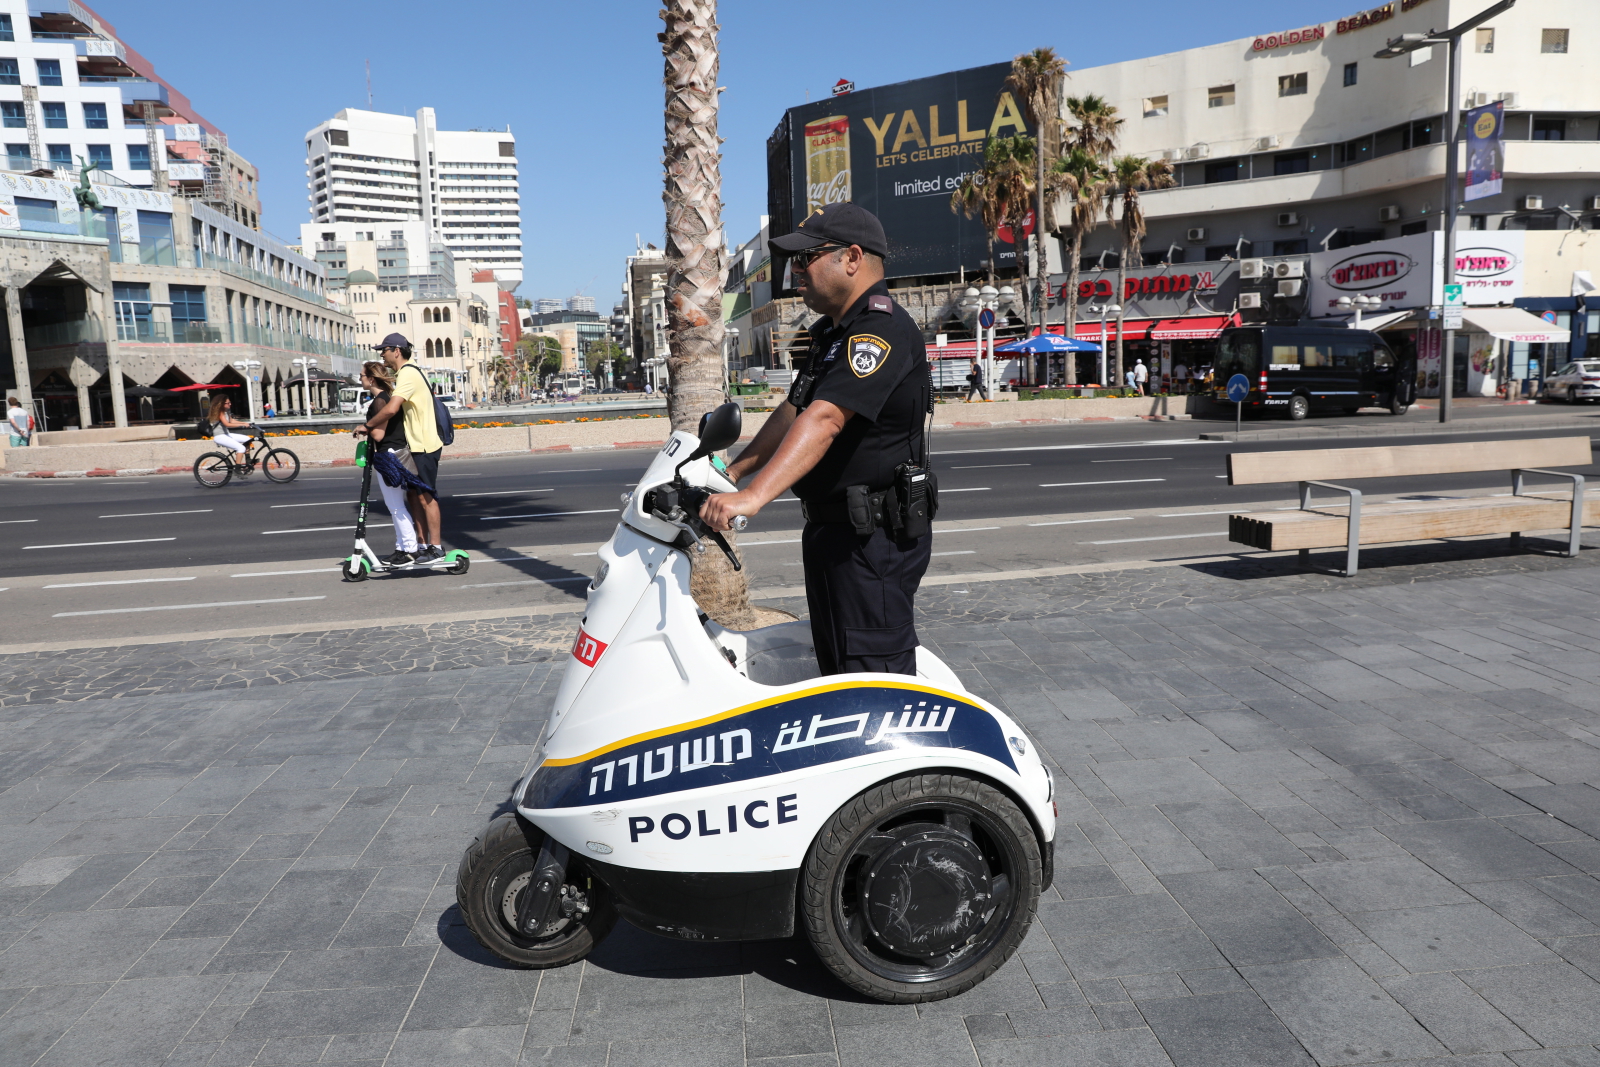 Izraelski policjant patroluje plaże w Tel-Awiwie. Z okazji Konkursu Piosenki Eurowizji, tłumy turystów odwiedzają teraz to miejsce, EPA / ABIR SULTAN